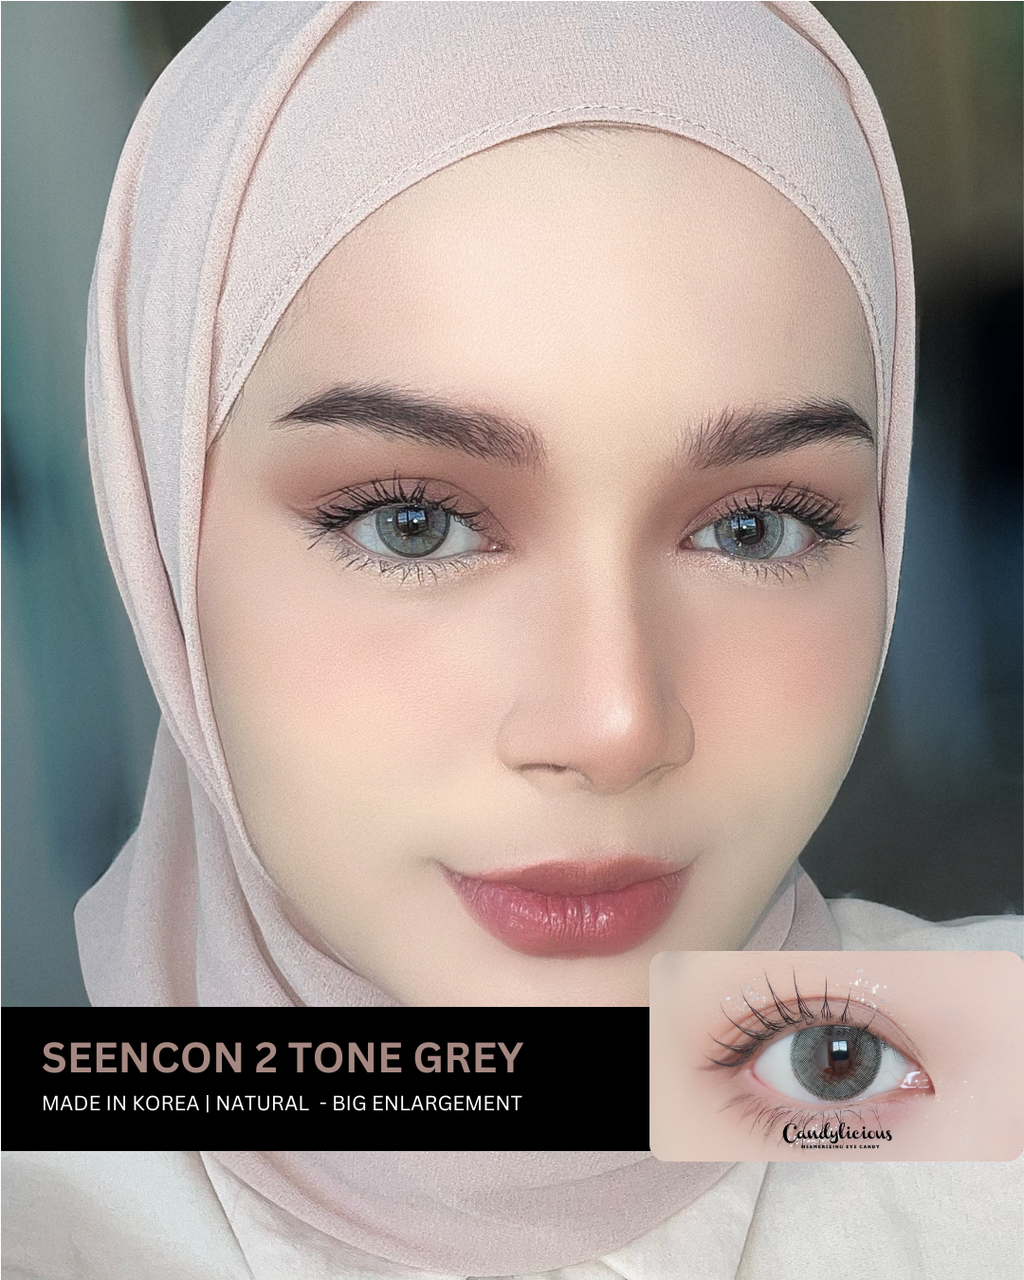 Seencon 2 tone grey